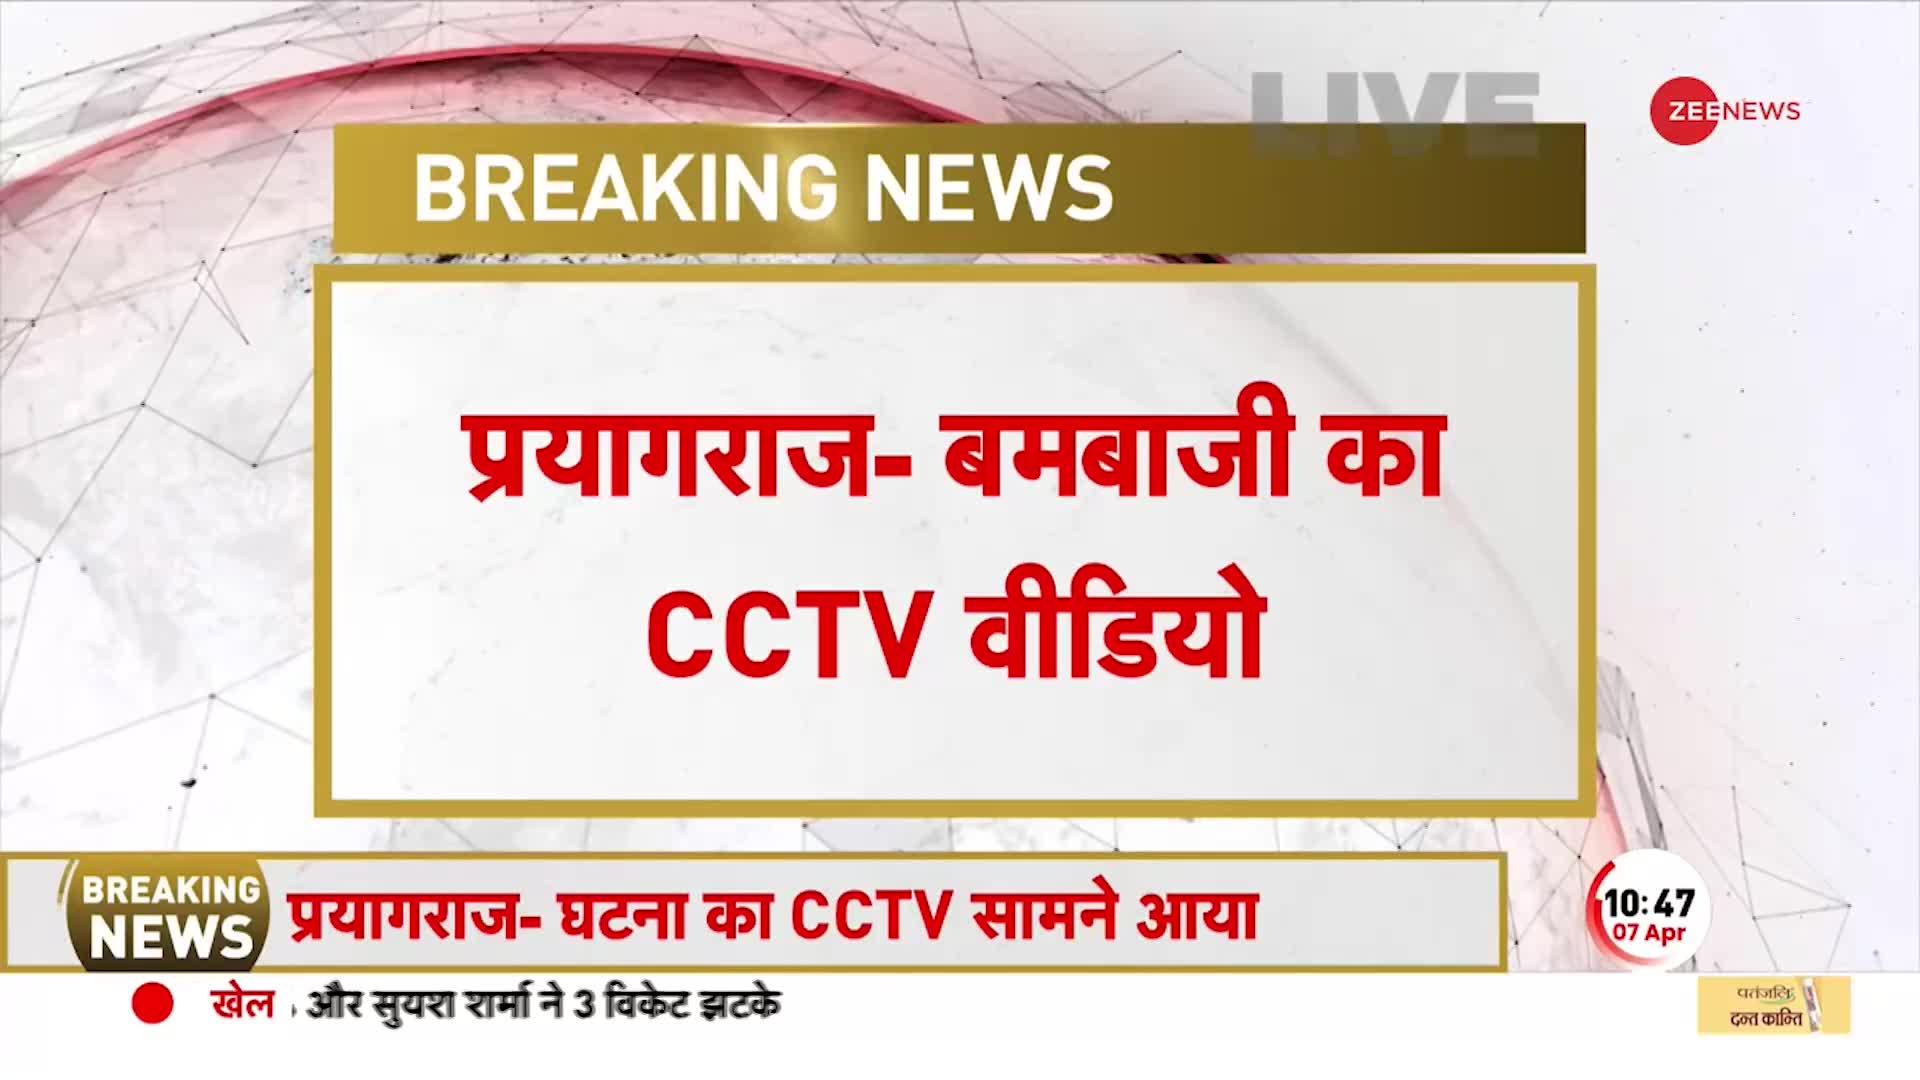 BREAKING NEWS: Prayagraj से बमबाजी का CCTV Video बरामद, BJP नेता के बेटे पर जानलेवा हमला